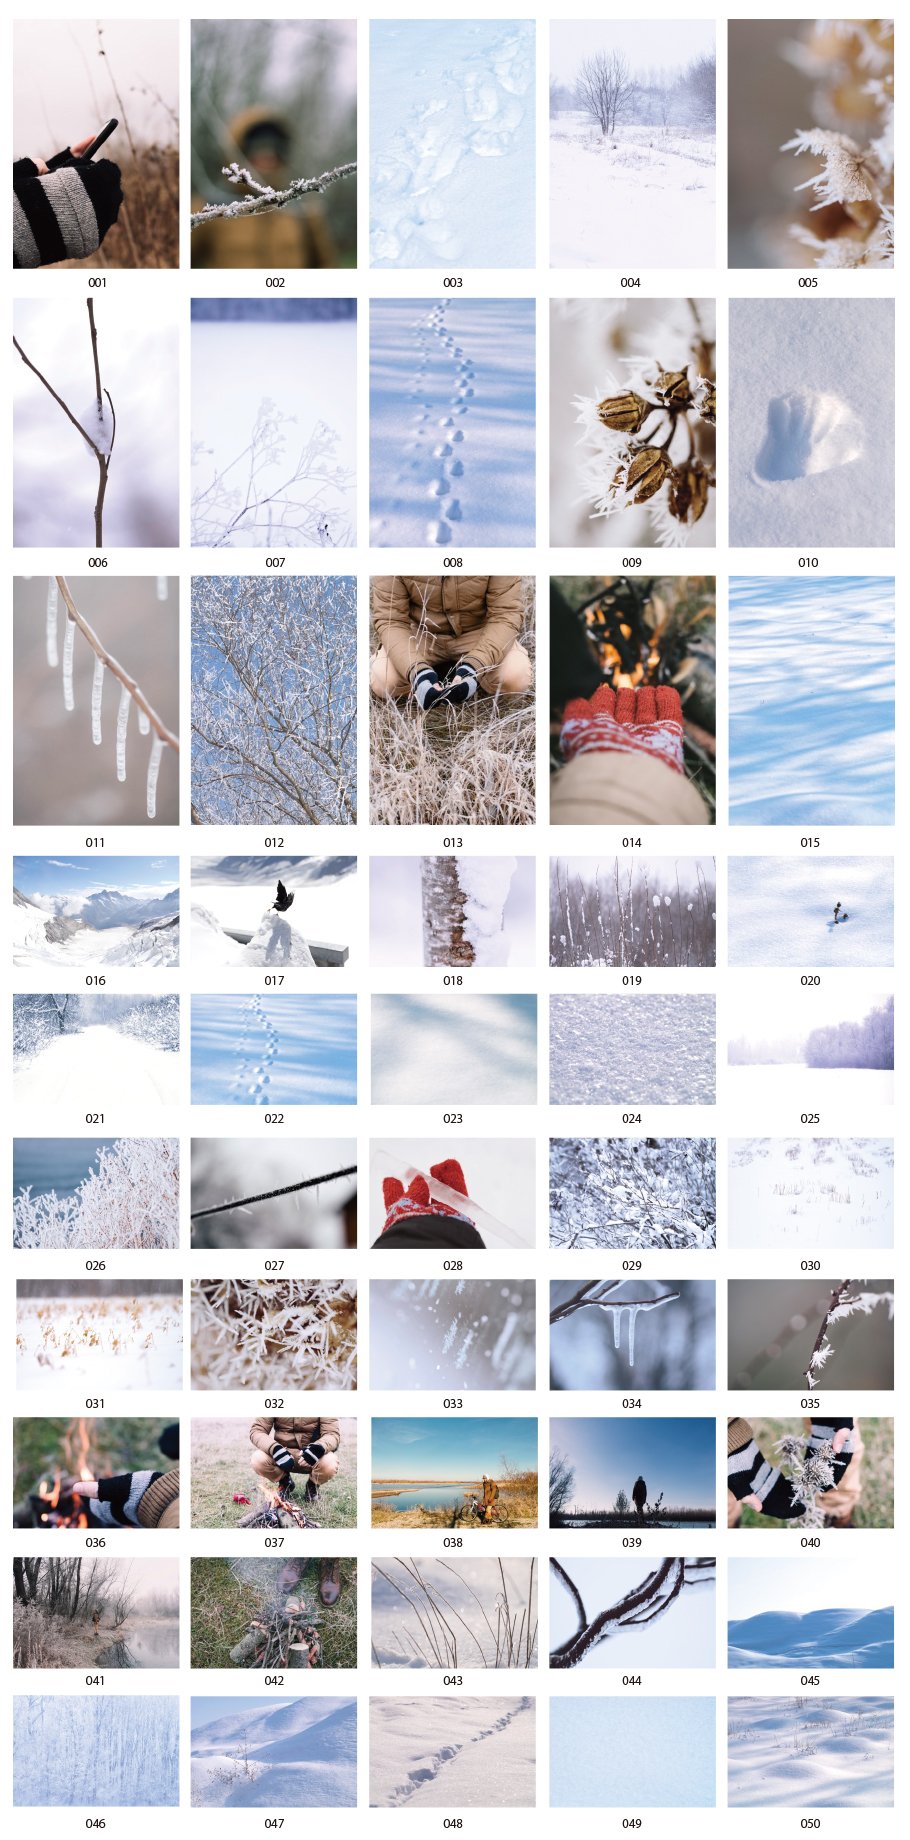 Winter scenery photos